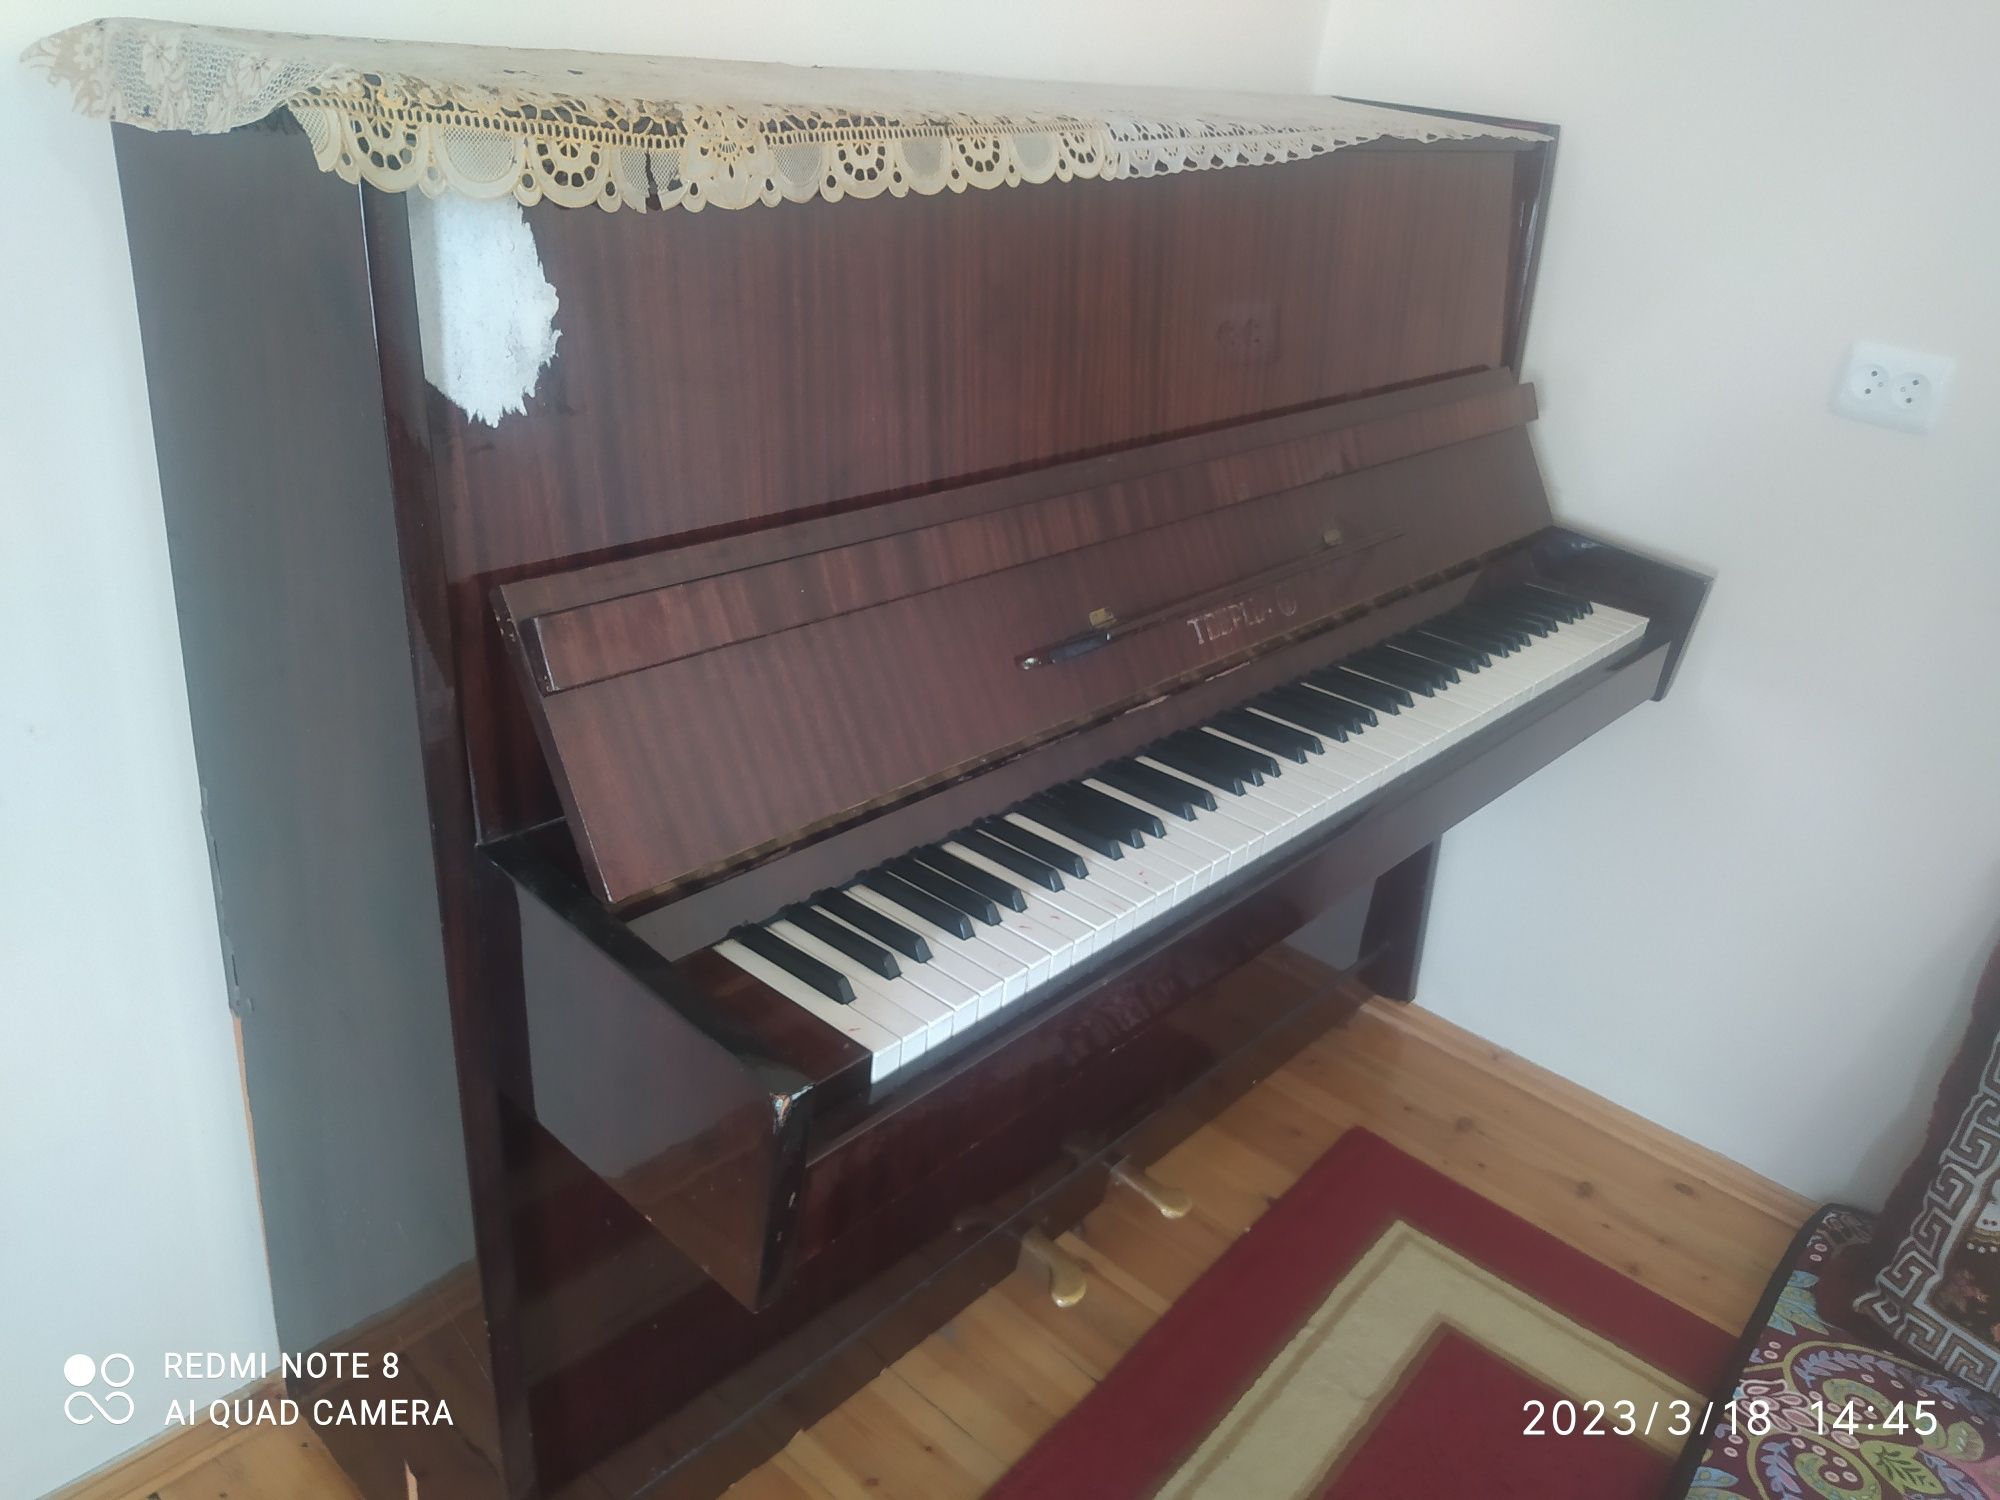 Музыкальные школы Тверской области получили новые пианино стоимостью 500 тысяч рублей каждое